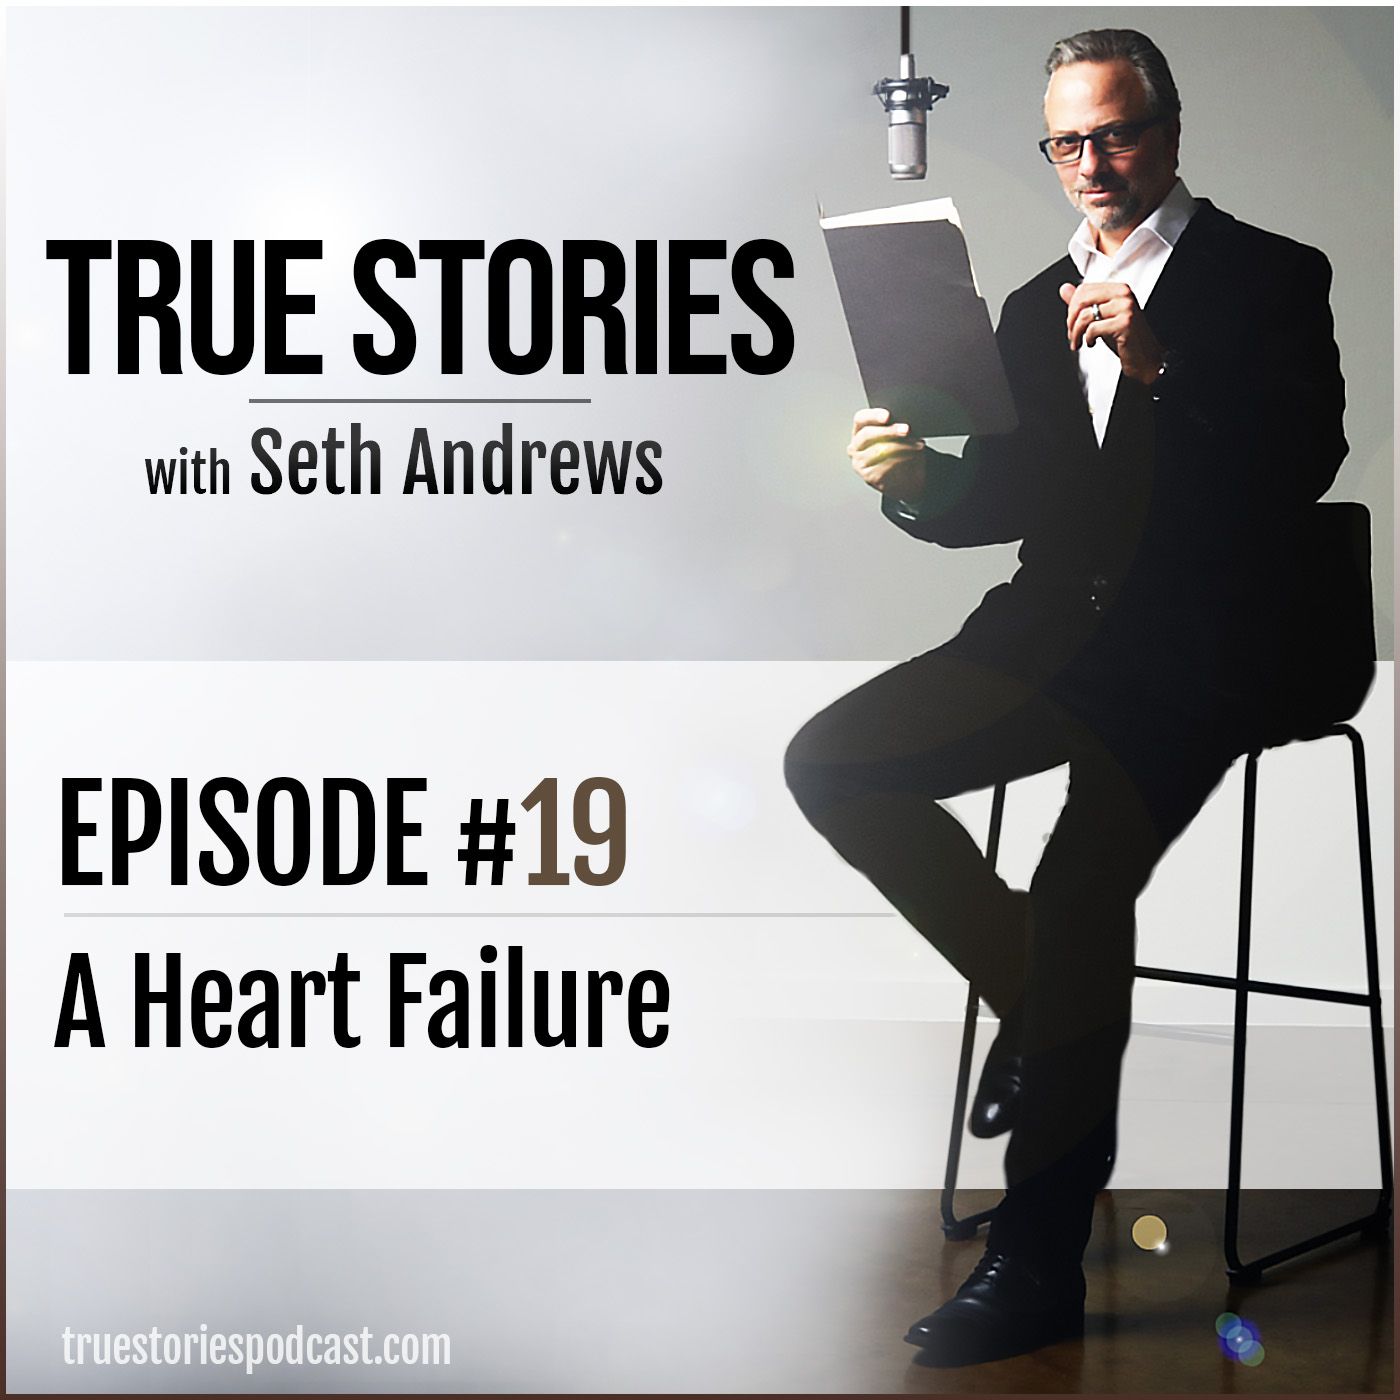 True Stories #19 - A Heart Failure